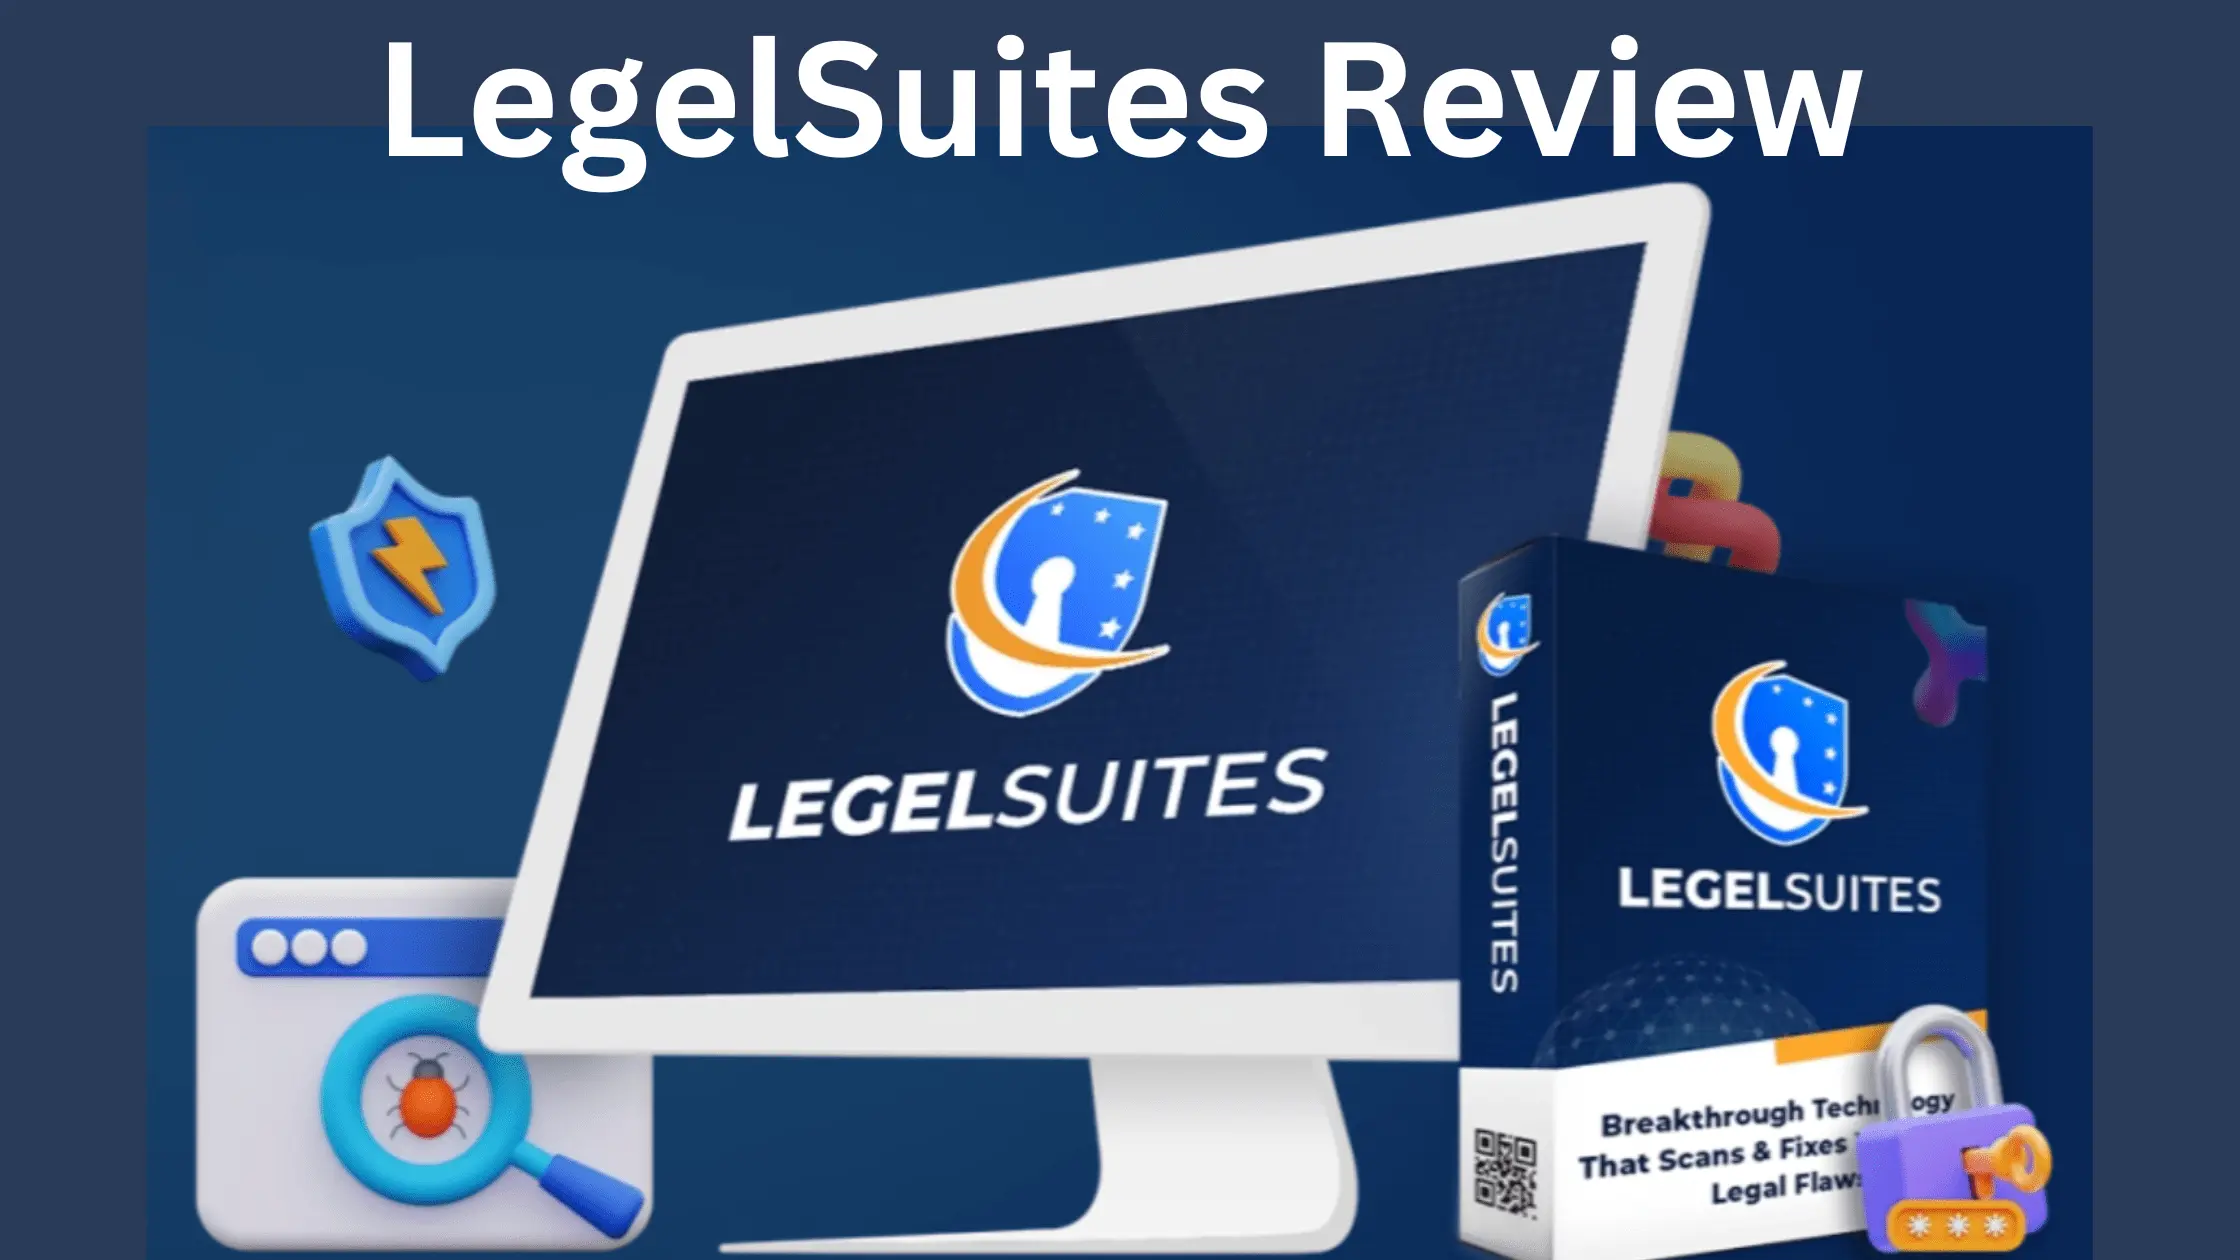 LegelSuites Review